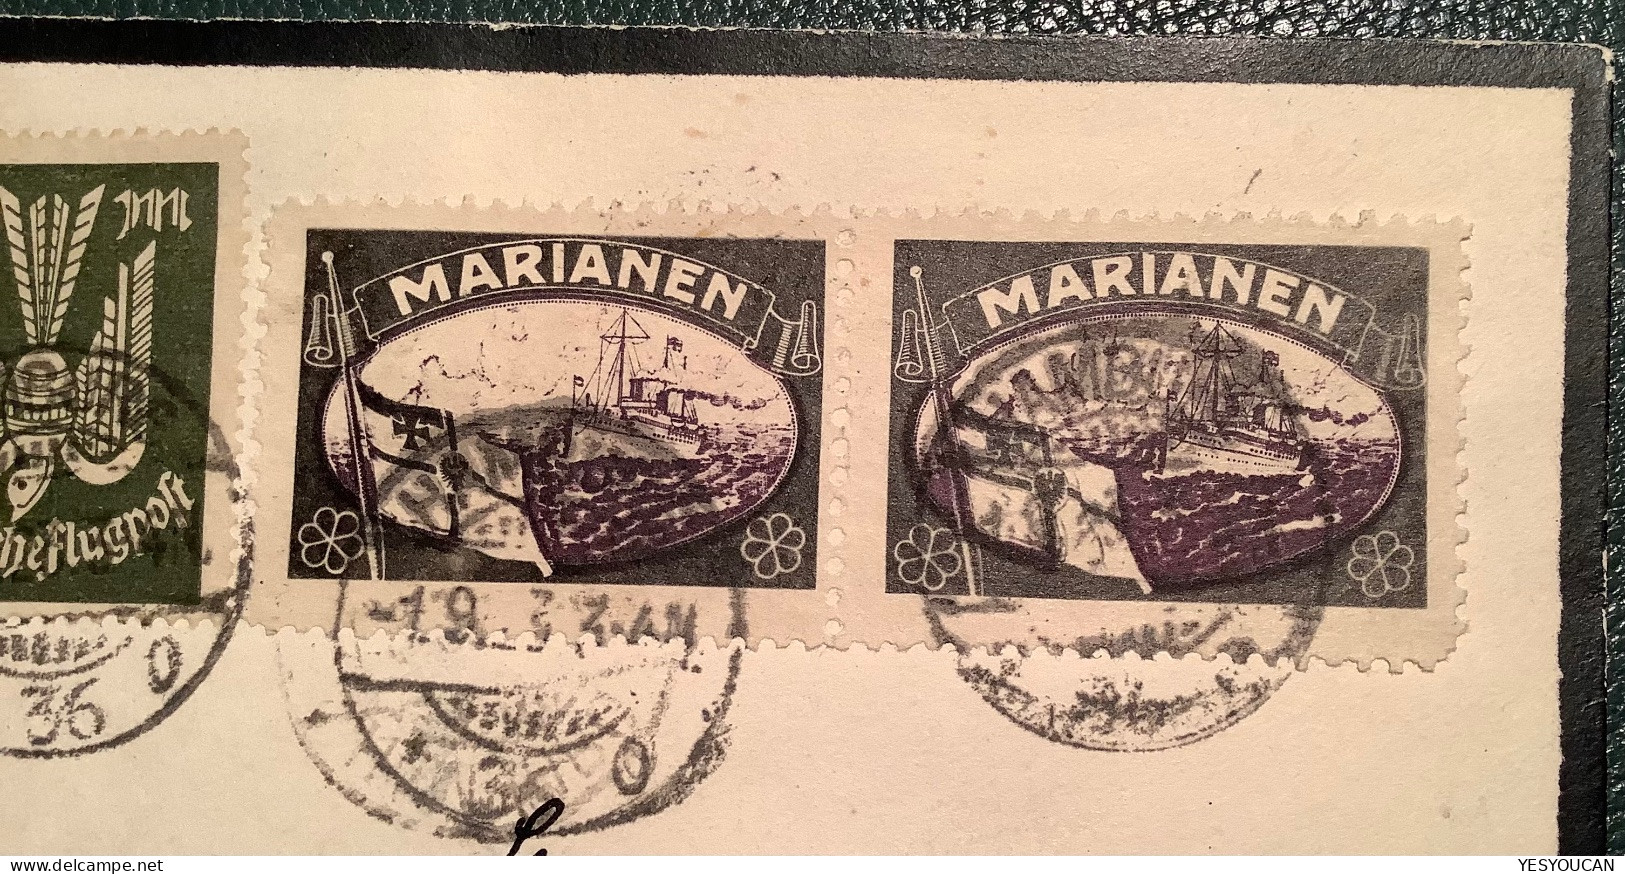 Marianen1923 Verlorene Deutsche Kolonien Vignette Brief ! HAMBURG Infla>Schweiz(Marianas Guam Propaganda Mourning Label - Marianen